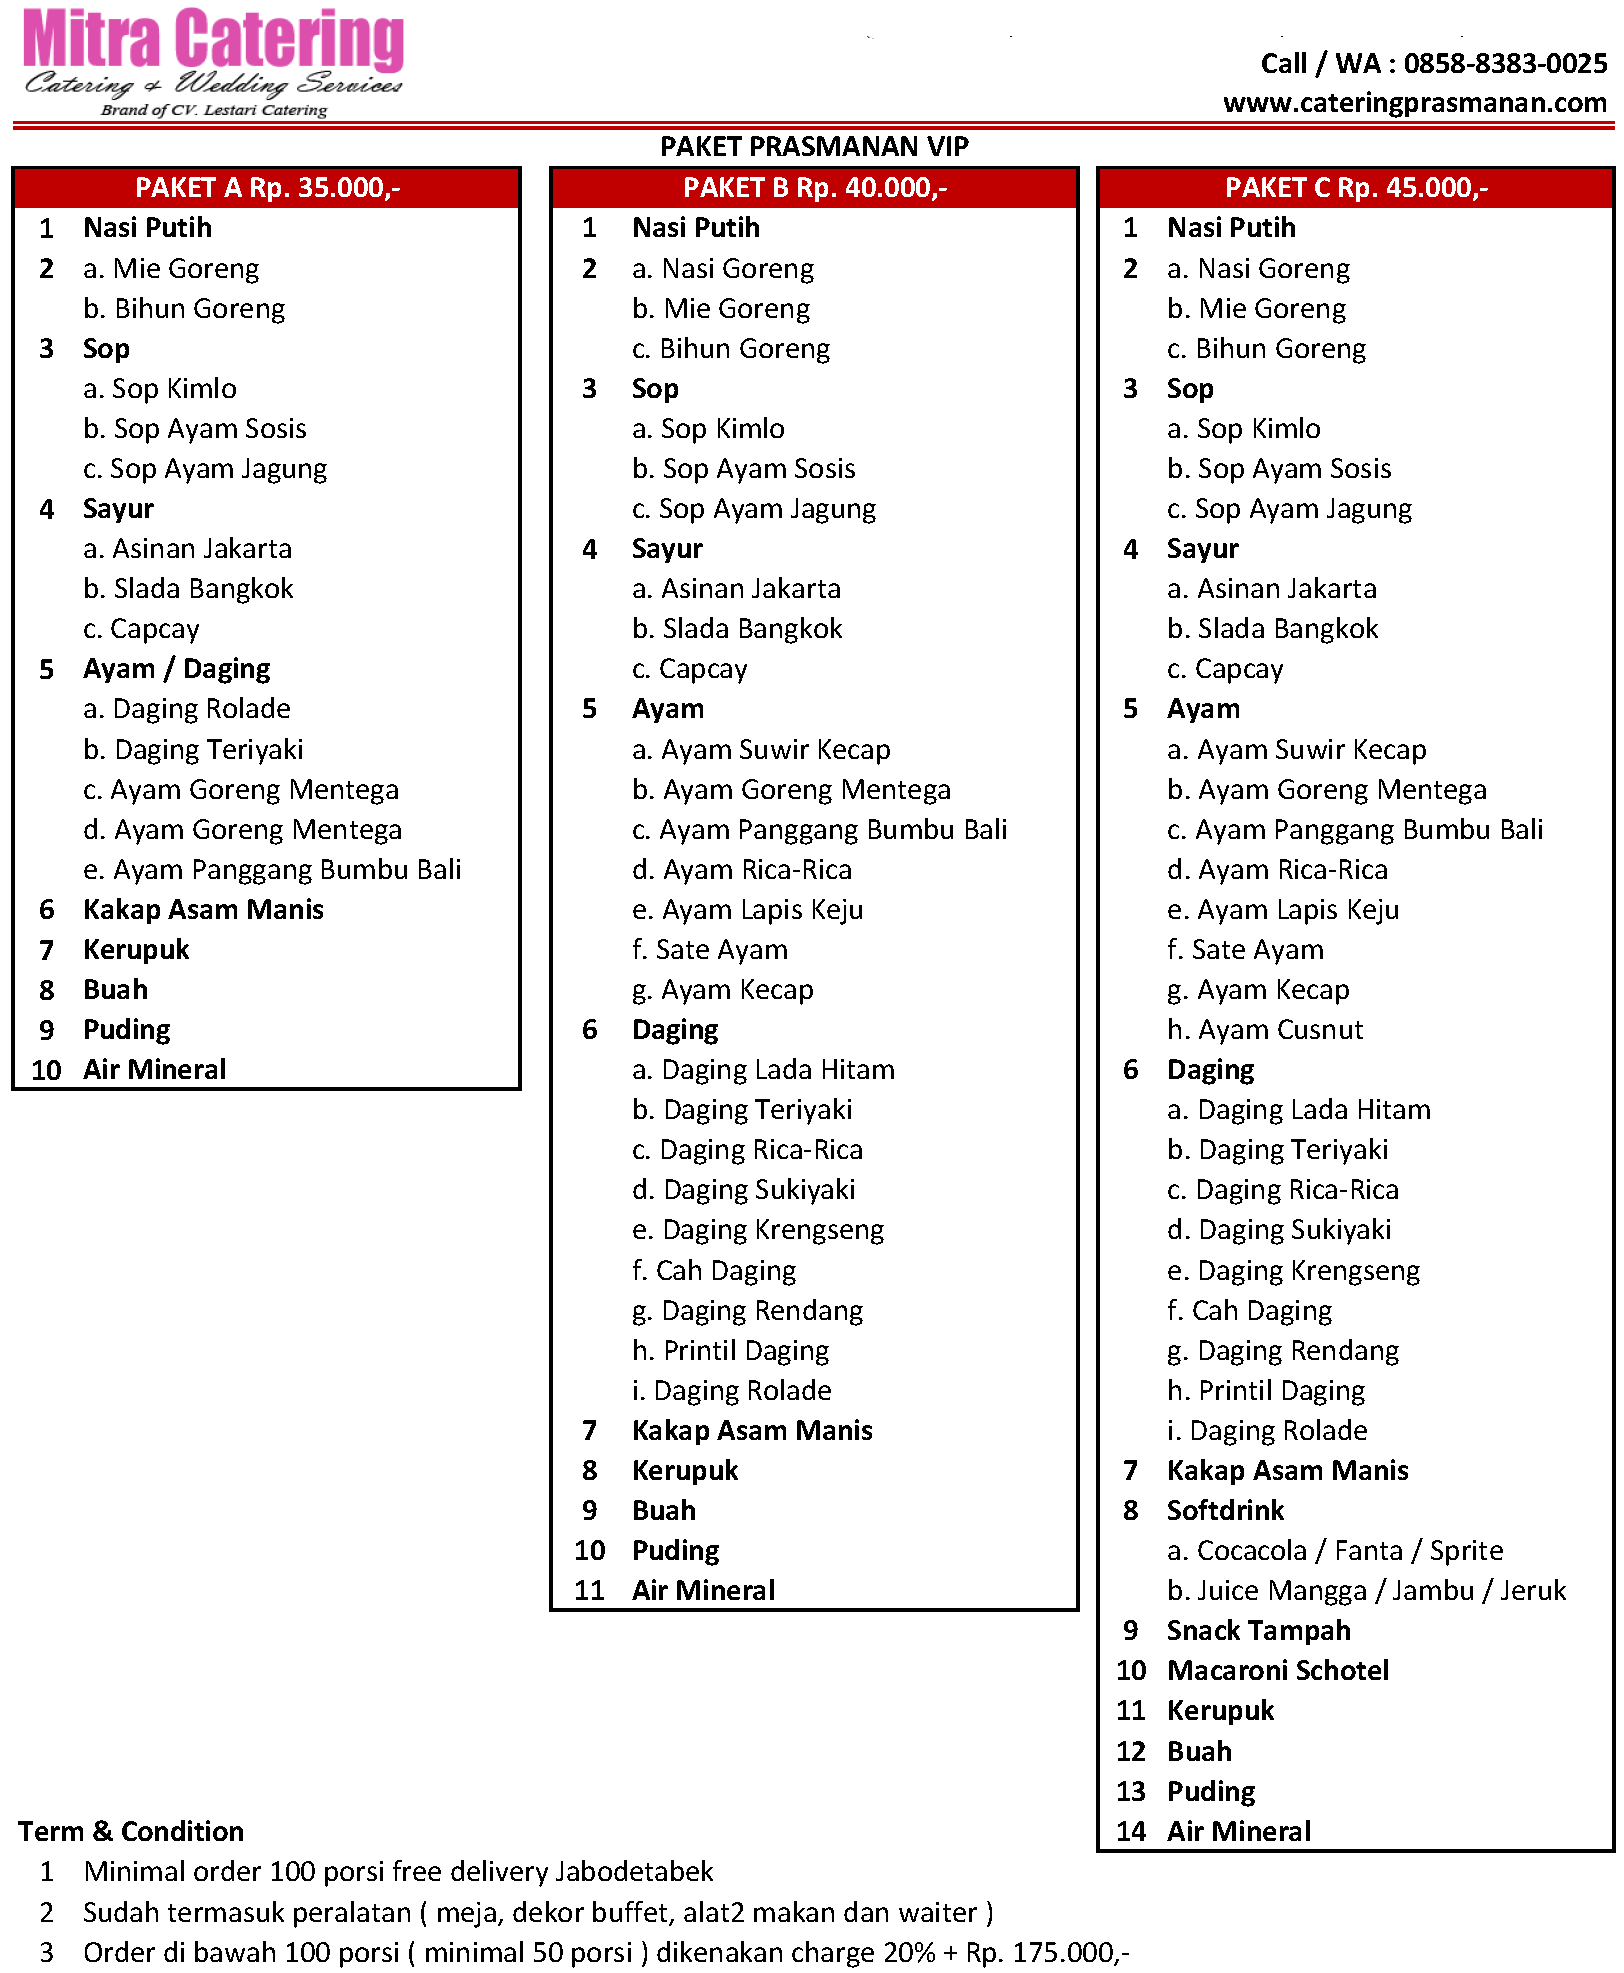 daftar menu catering murah untuk sunatan di bekasi